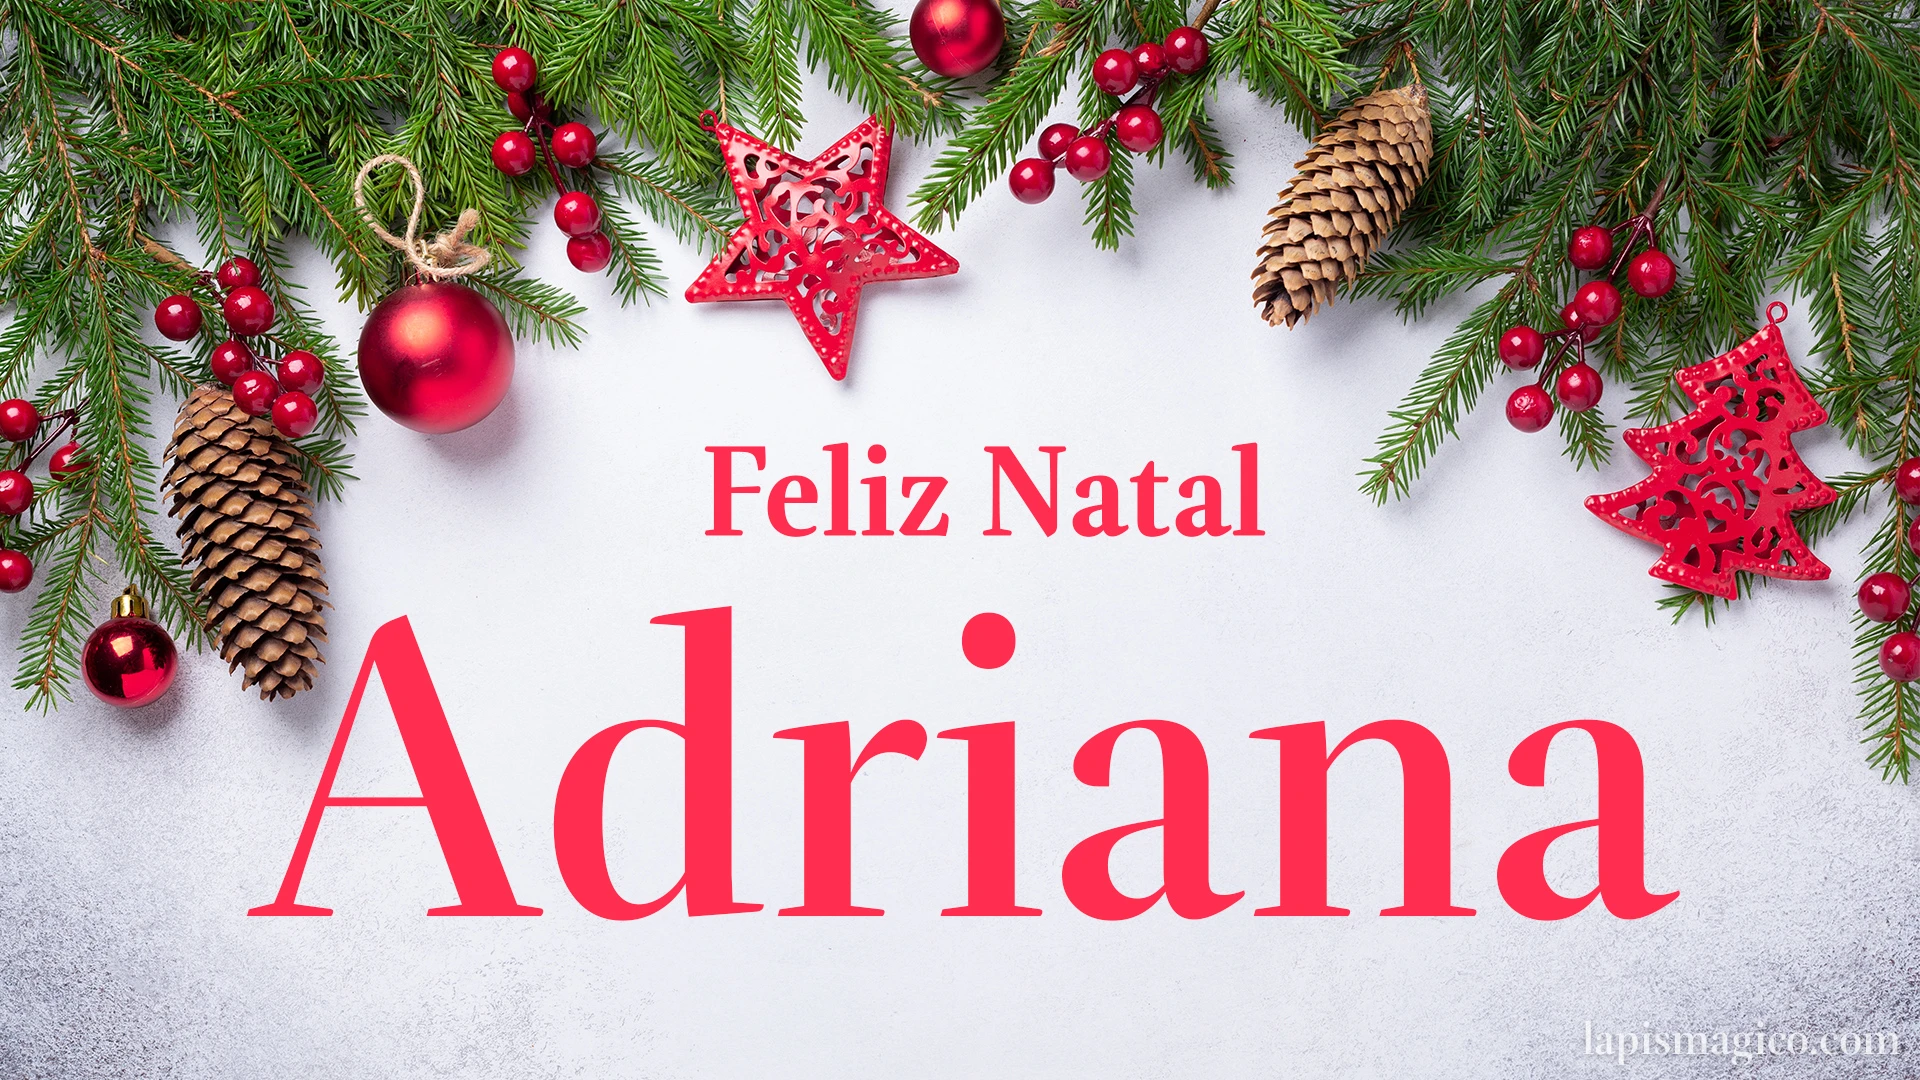 Oh Adriana, cinco postais de Feliz Natal Postal com o teu nome